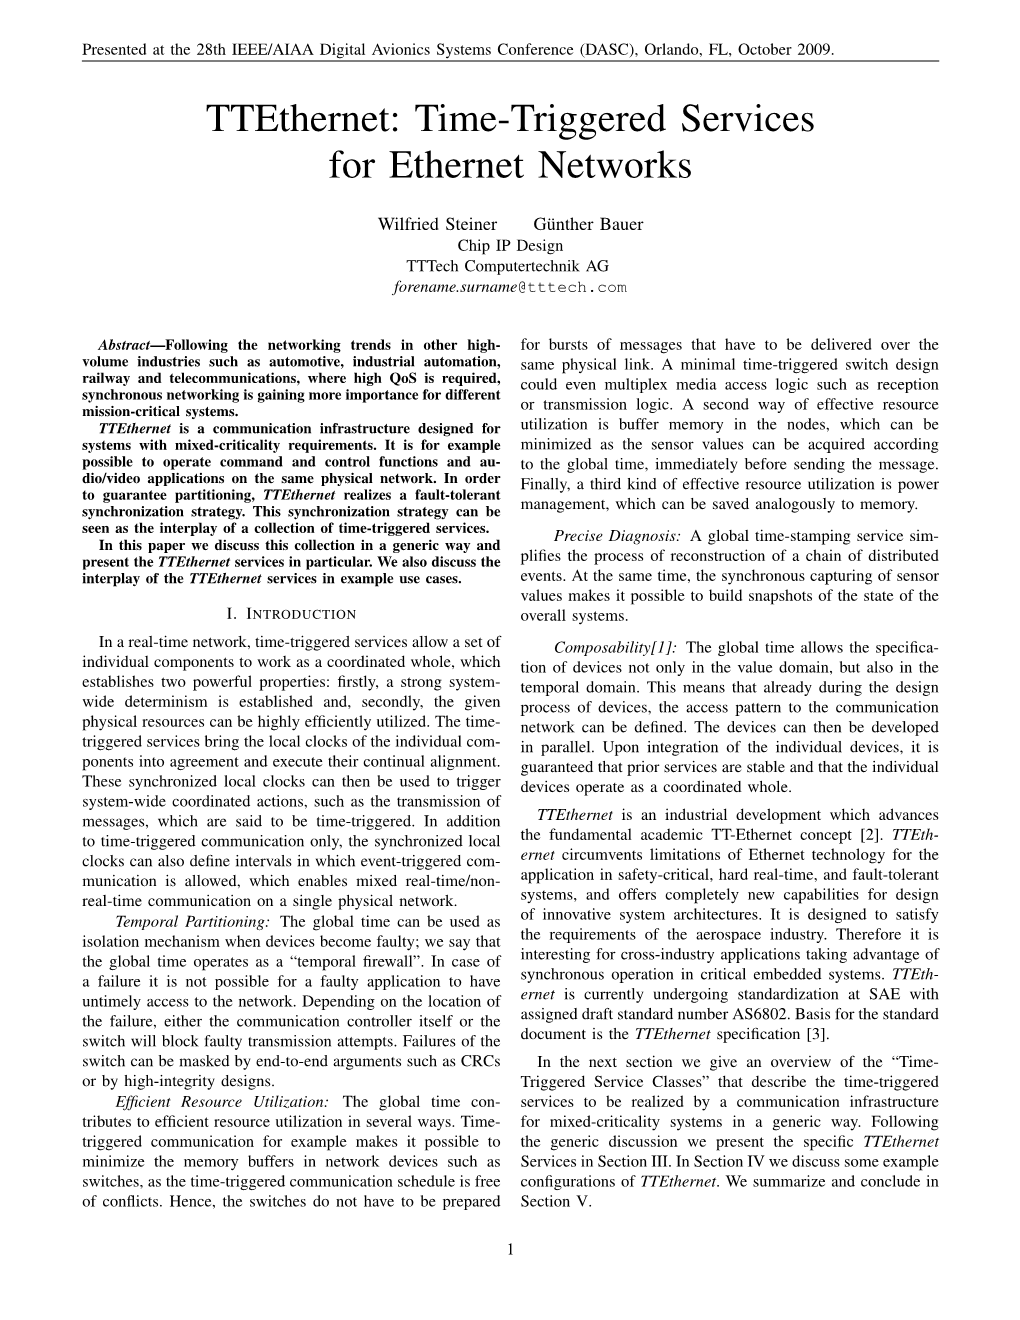 Ttethernet: Time-Triggered Services for Ethernet Networks